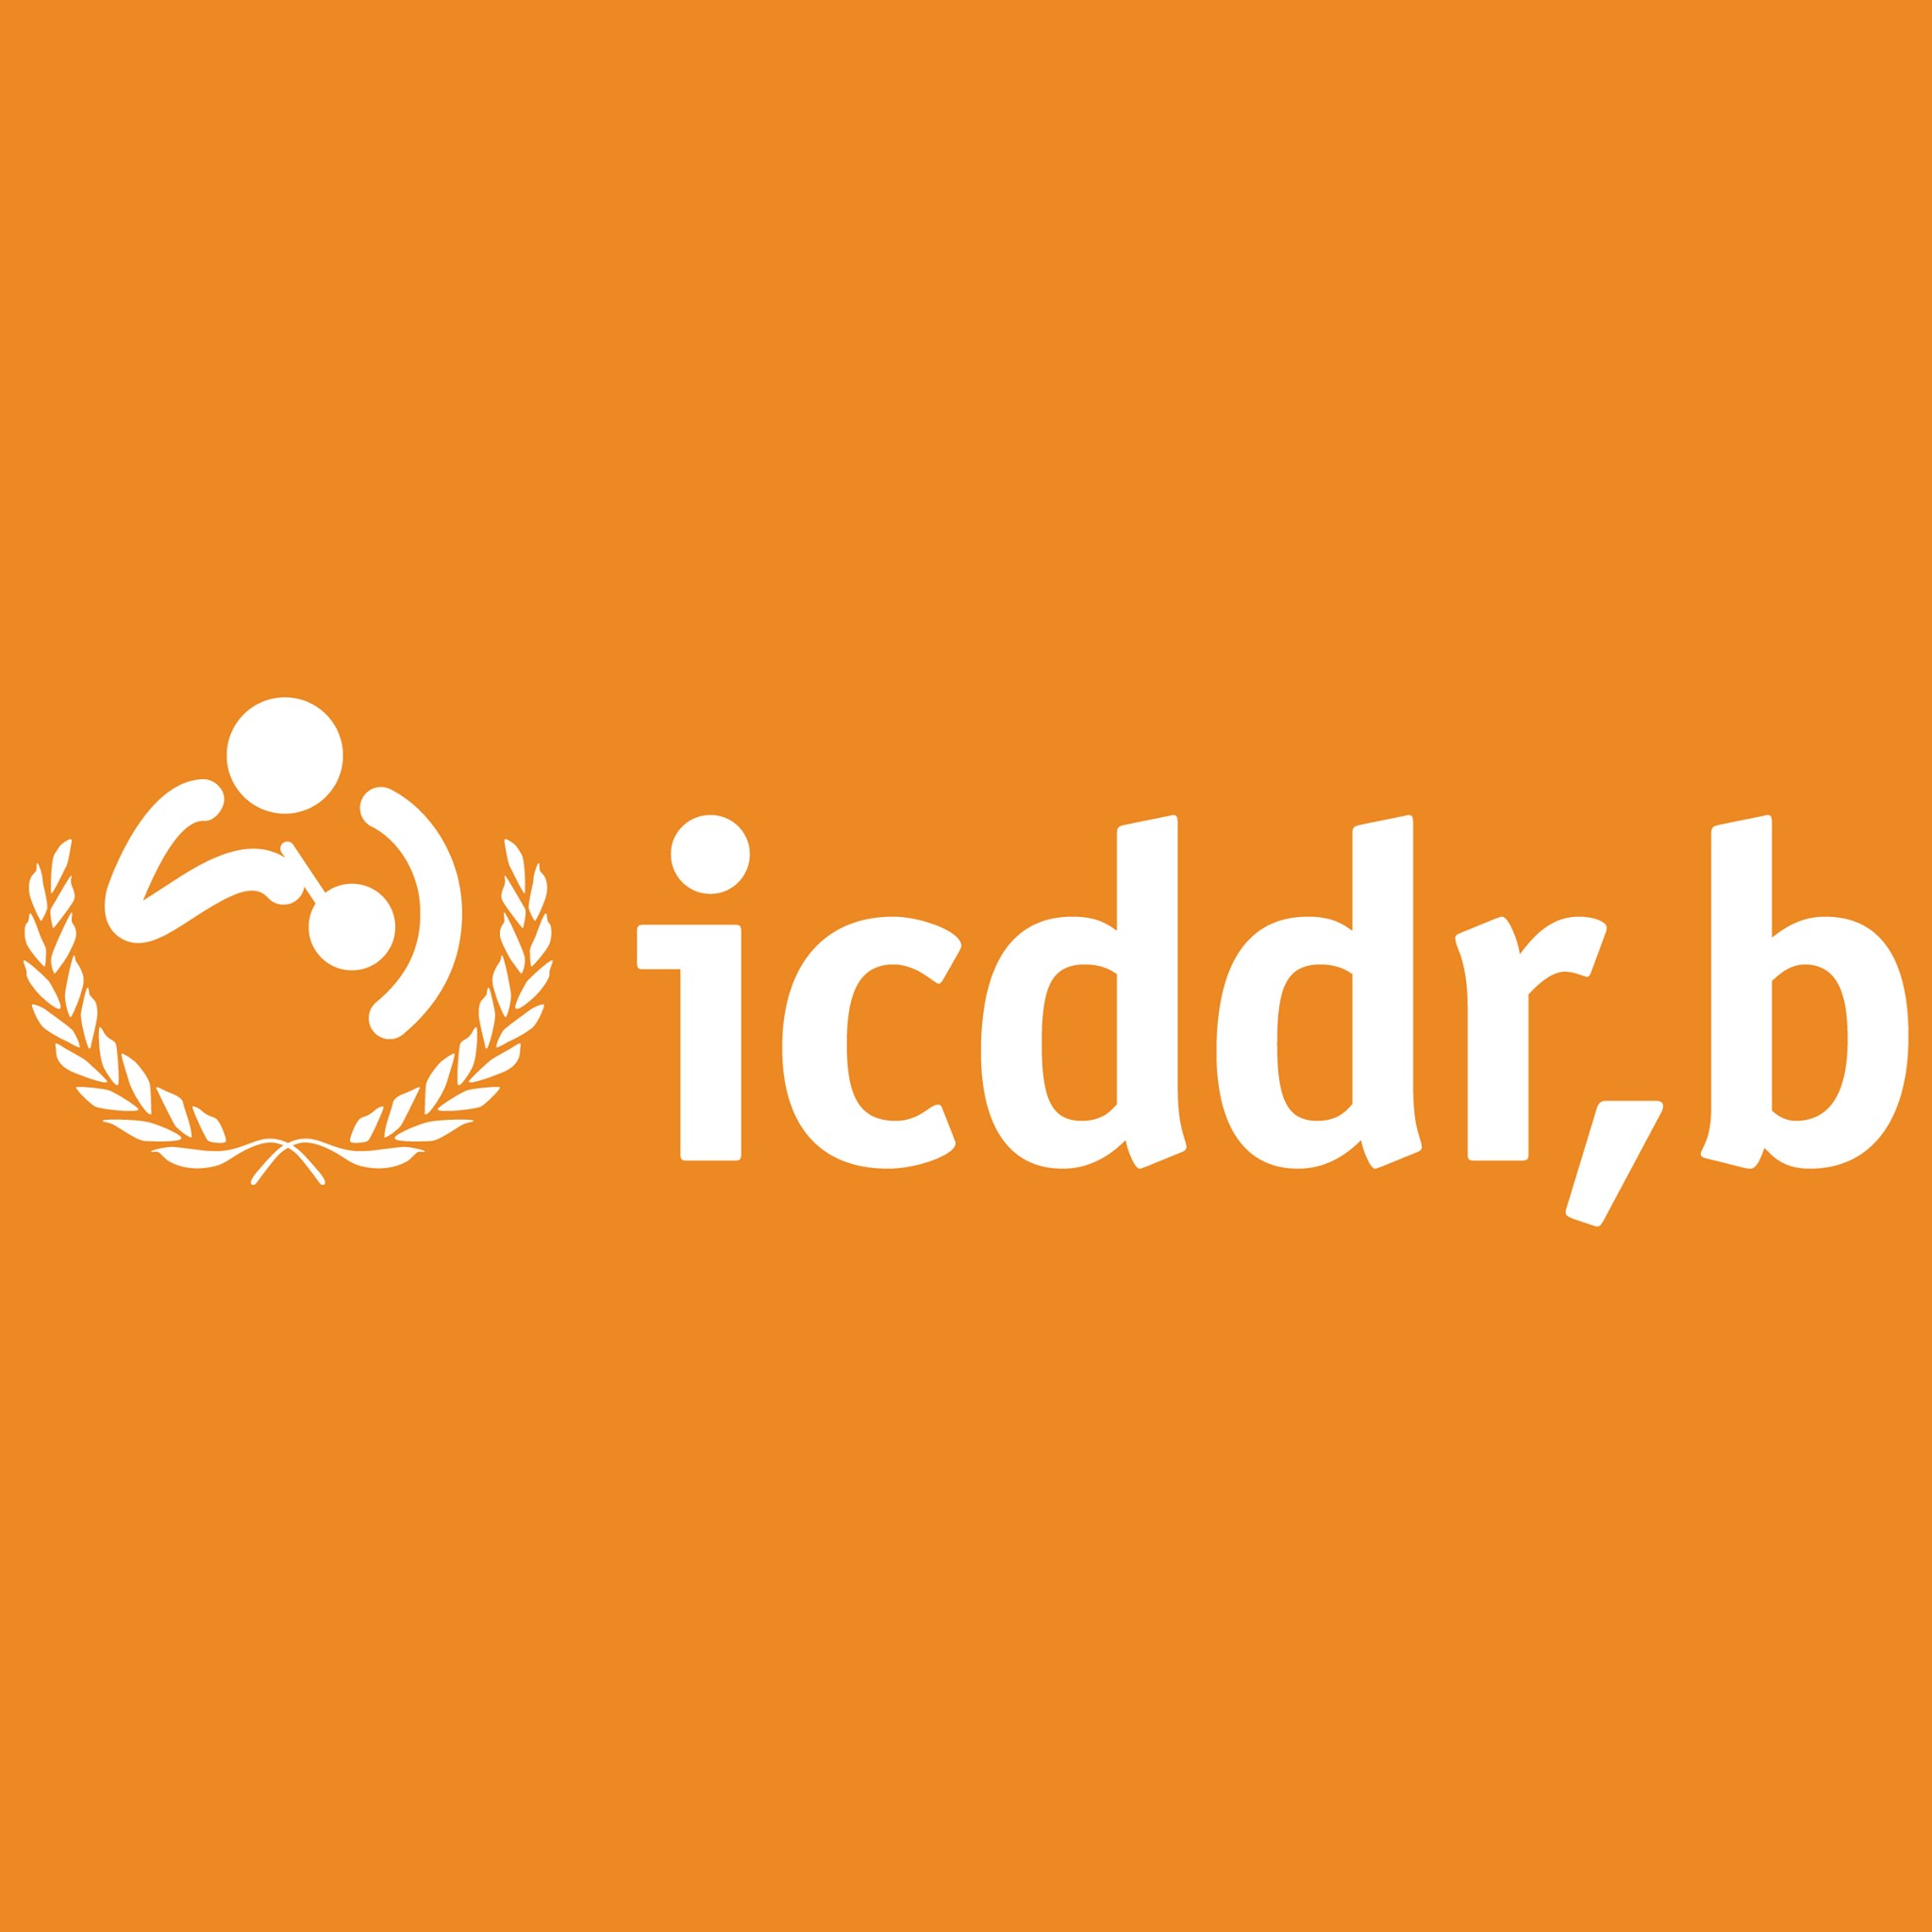 logotipo icddr,b